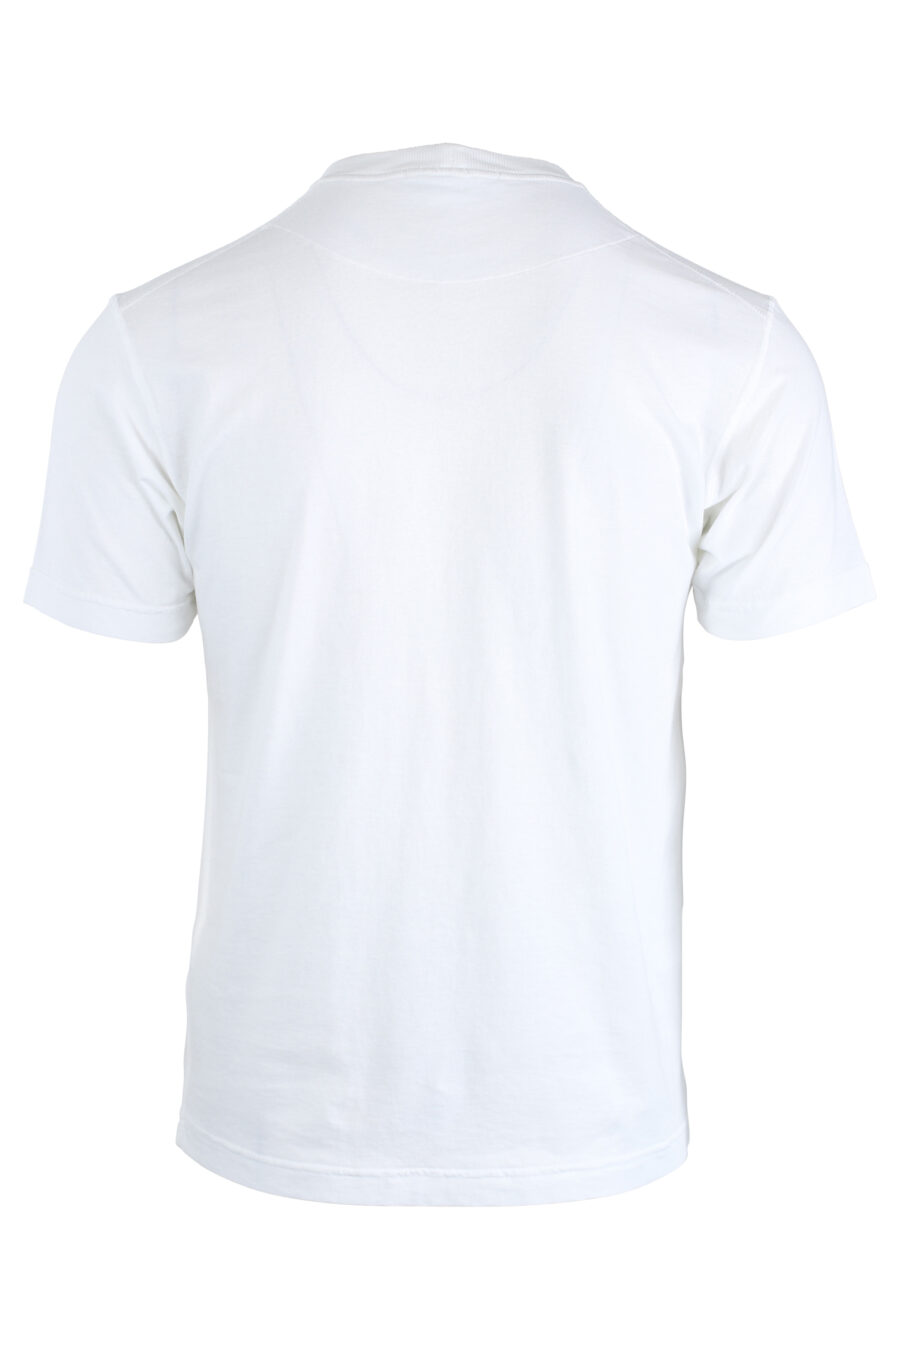 T-shirt branca com bolso - IMG 1686